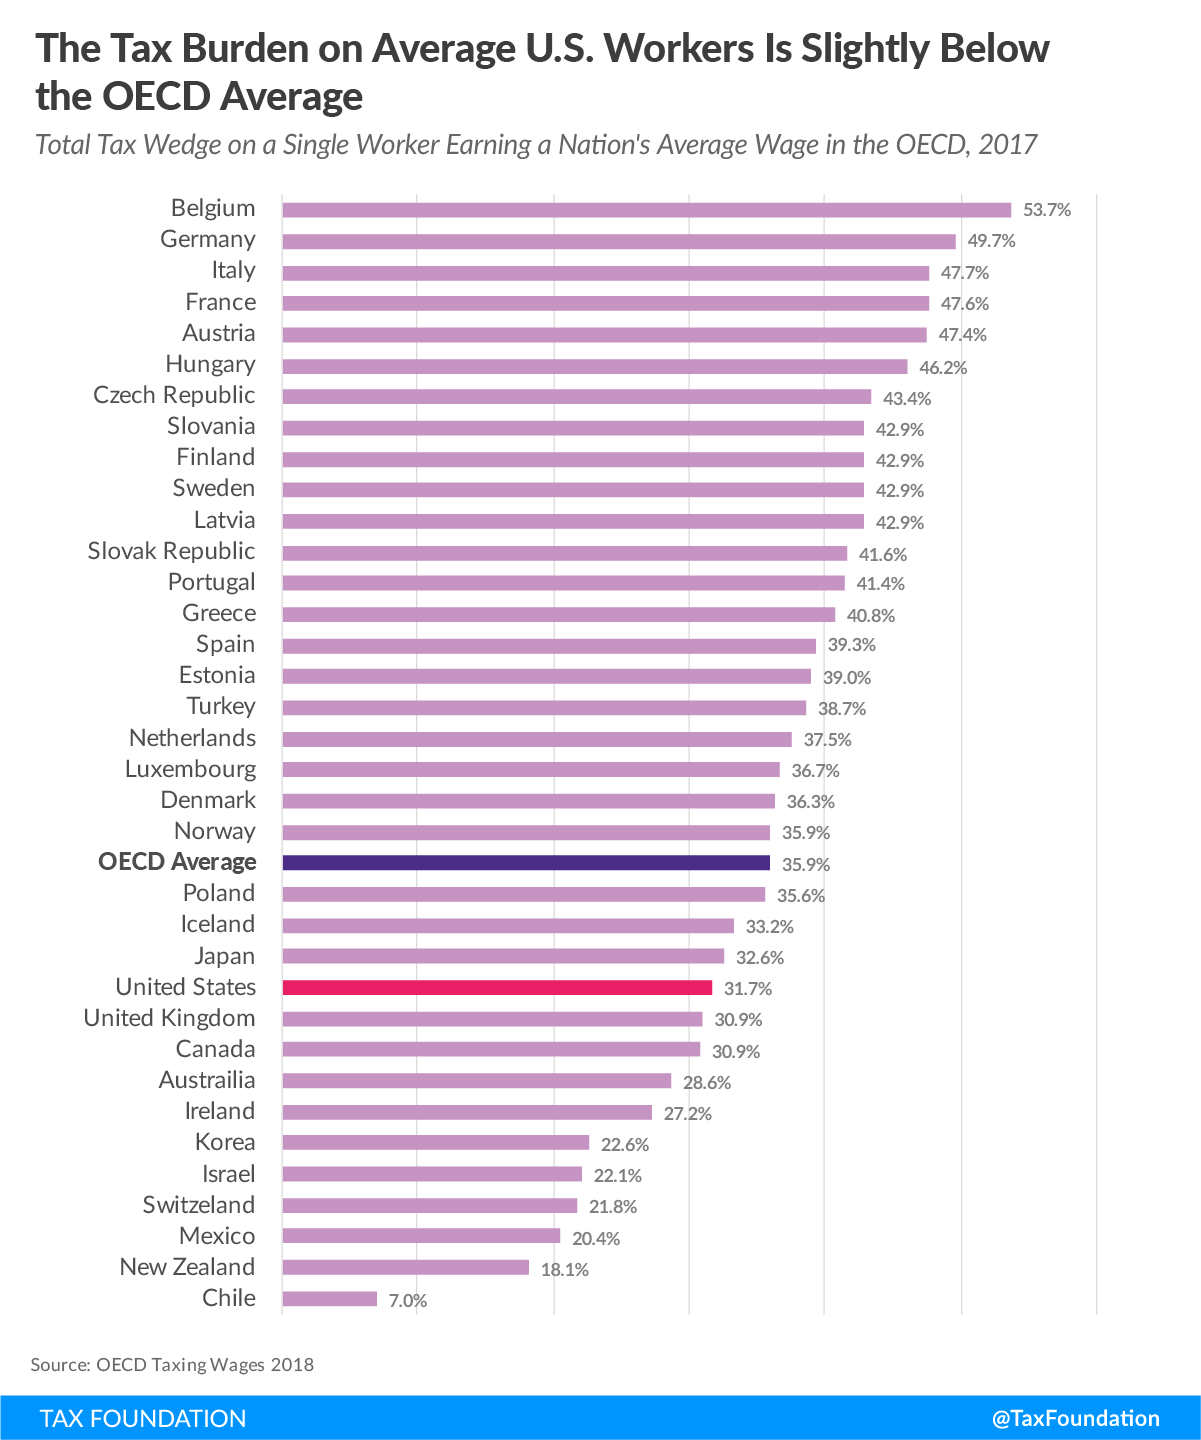 Tax Burden on Average U.S. Workers is Slightly Below the OECD Average